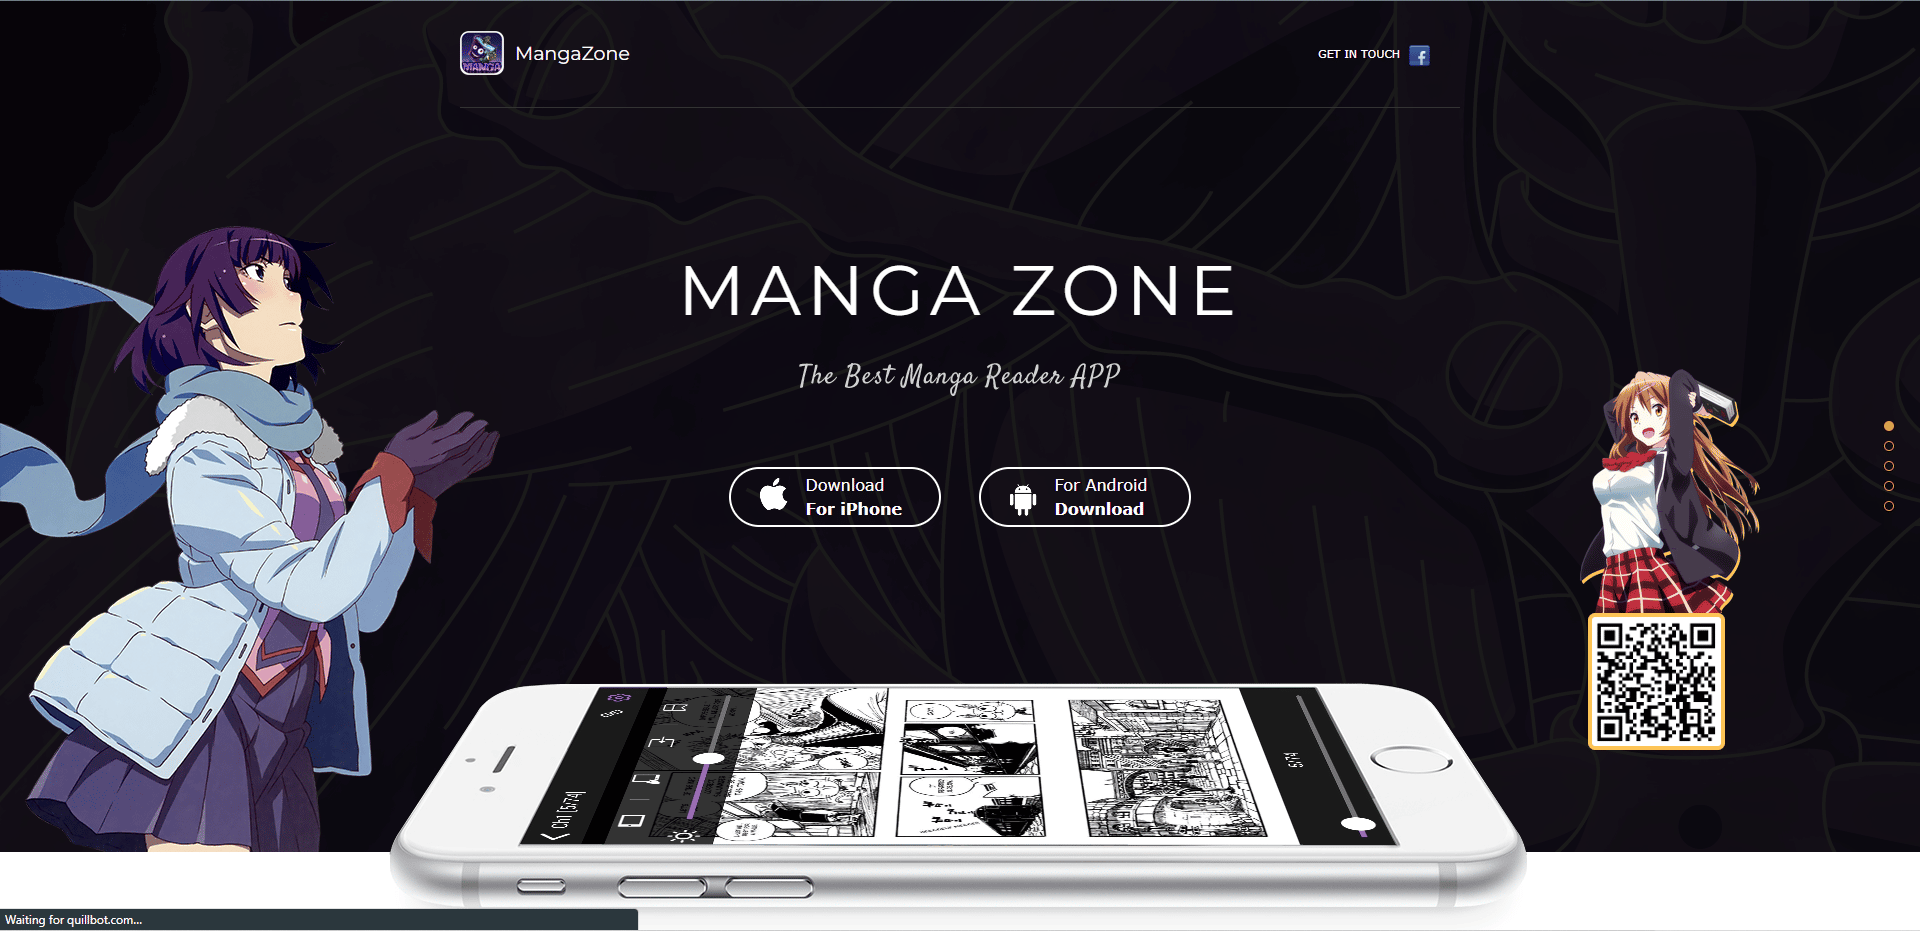 MangaZone virallinen verkkosivusto. Parhaat Android-sovellukset Mangan lukemiseen ilmaiseksi